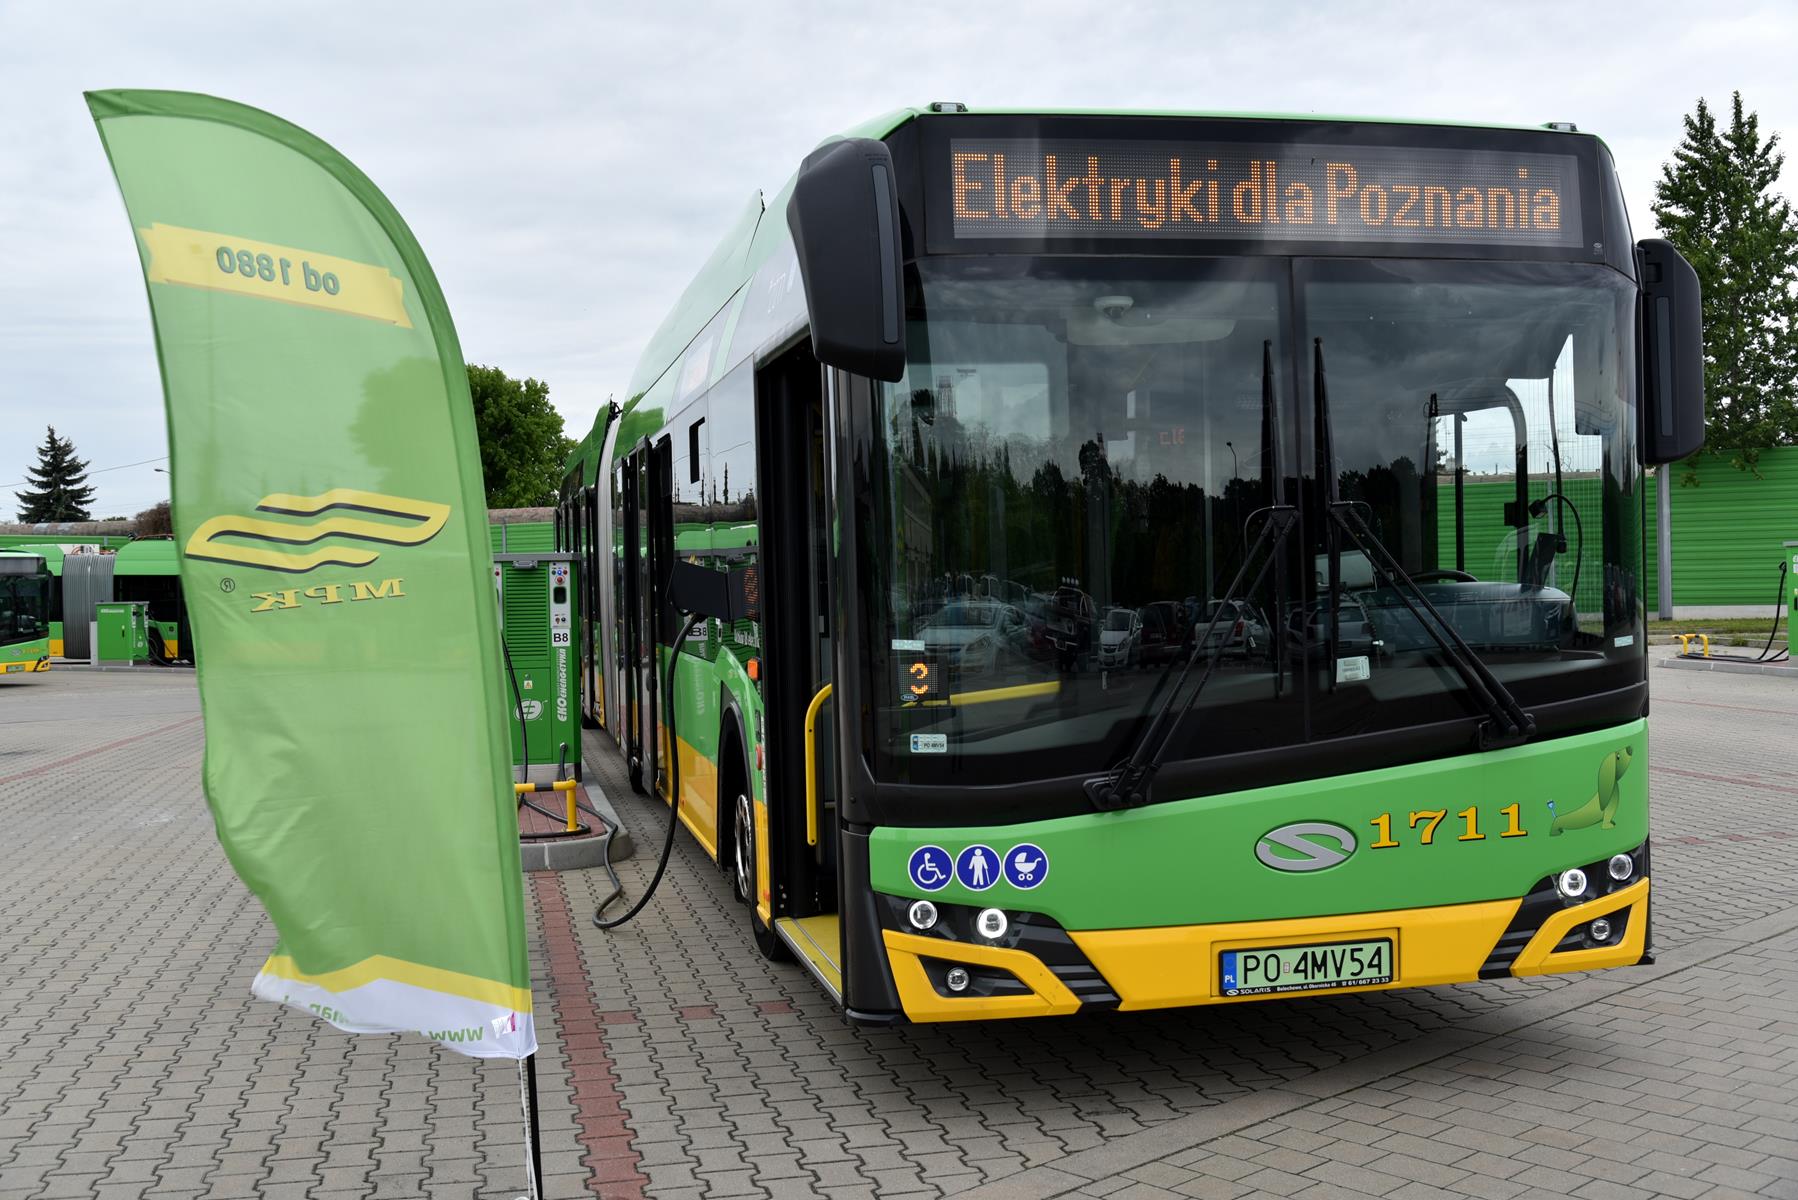 Zakupiony elektryczny autobus